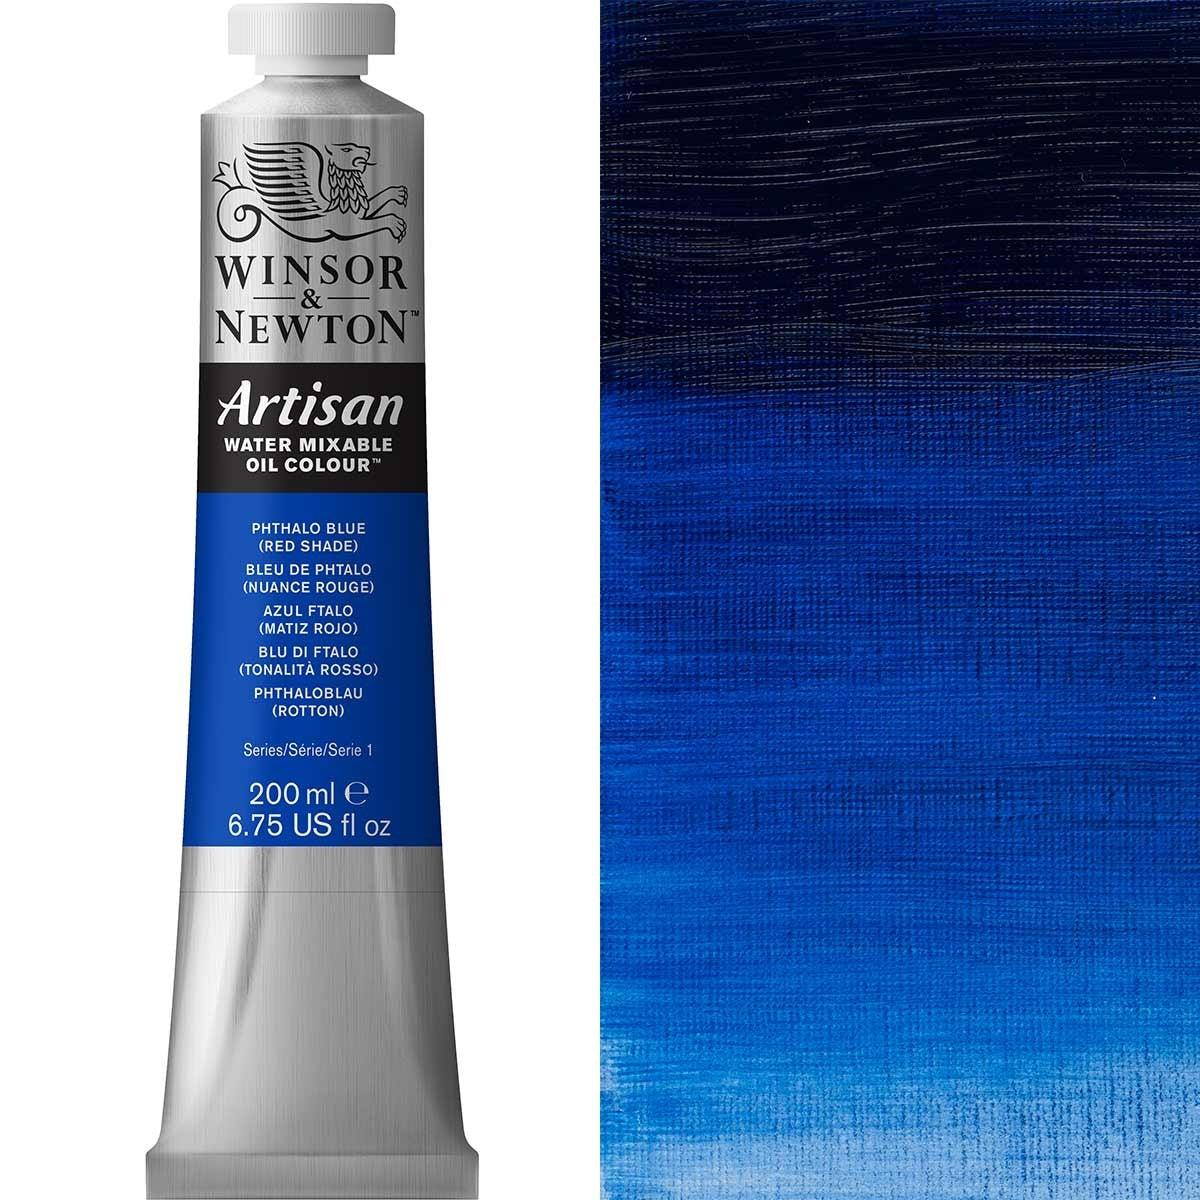 Winsor e Newton - Watermixable di colore olio artigianale - 200 ml - tonalità rossa blu phthalo